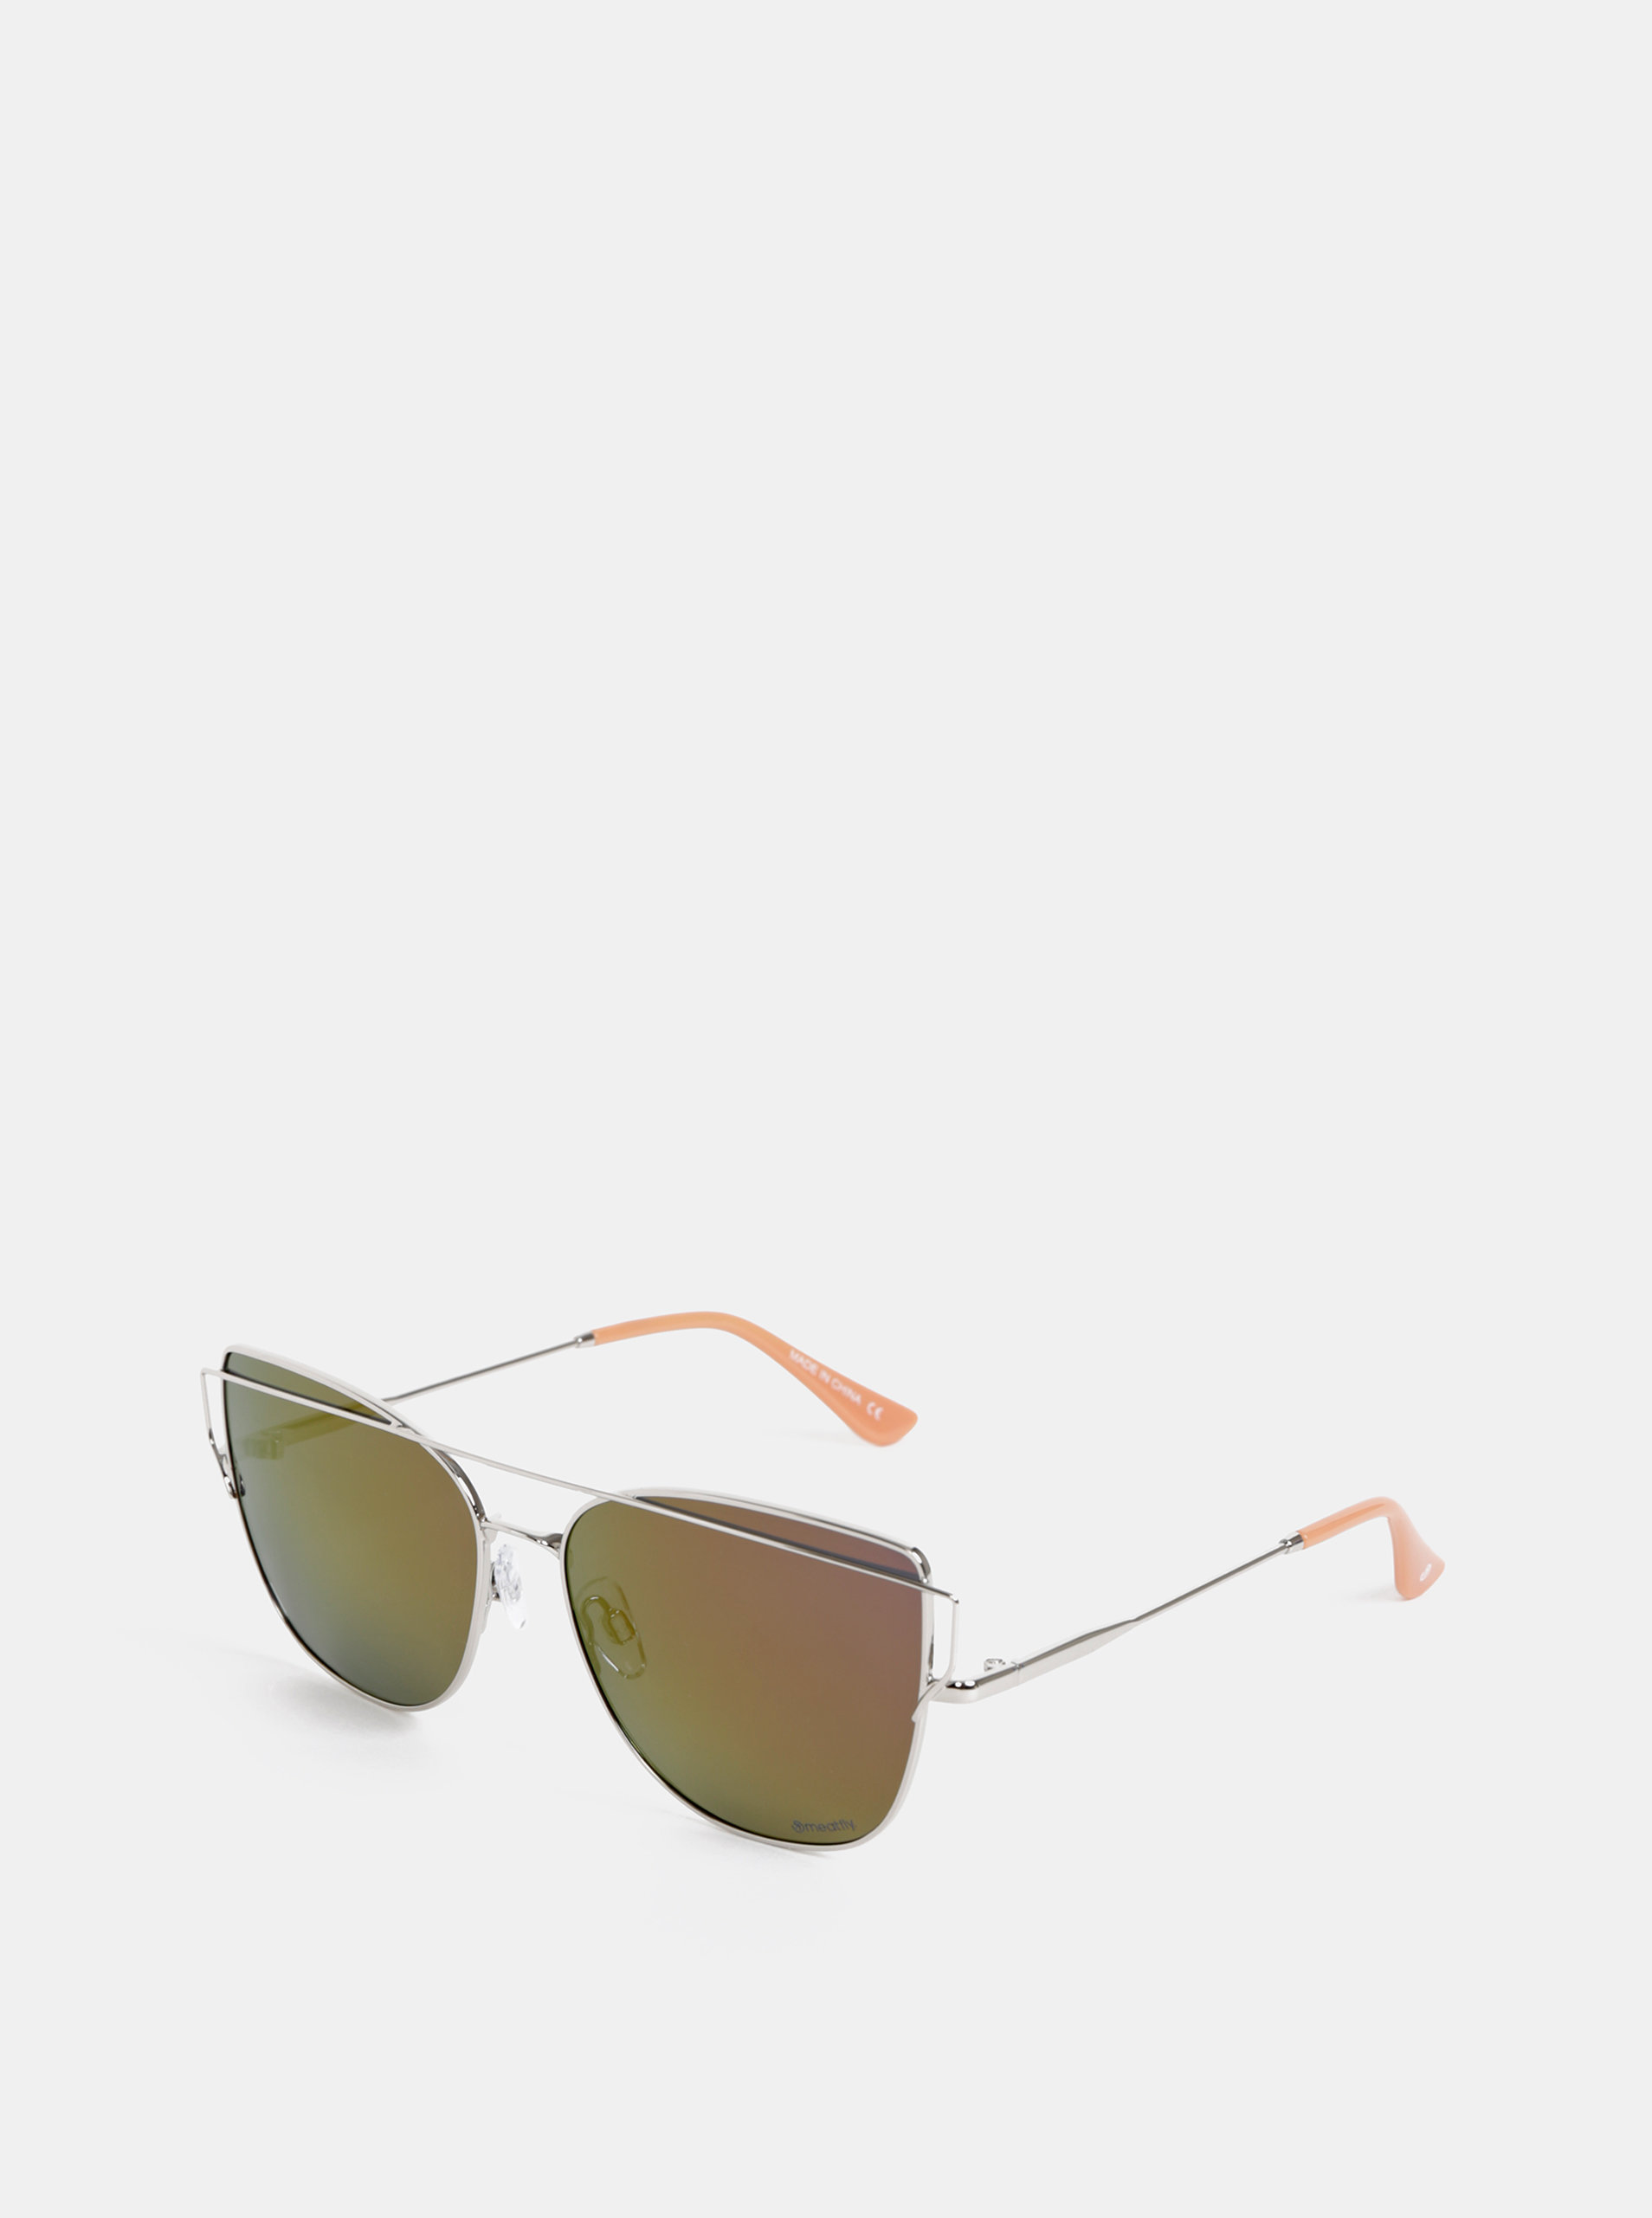 Dámské sluneční brýle ve stříbrné barvě Meatfly Vision